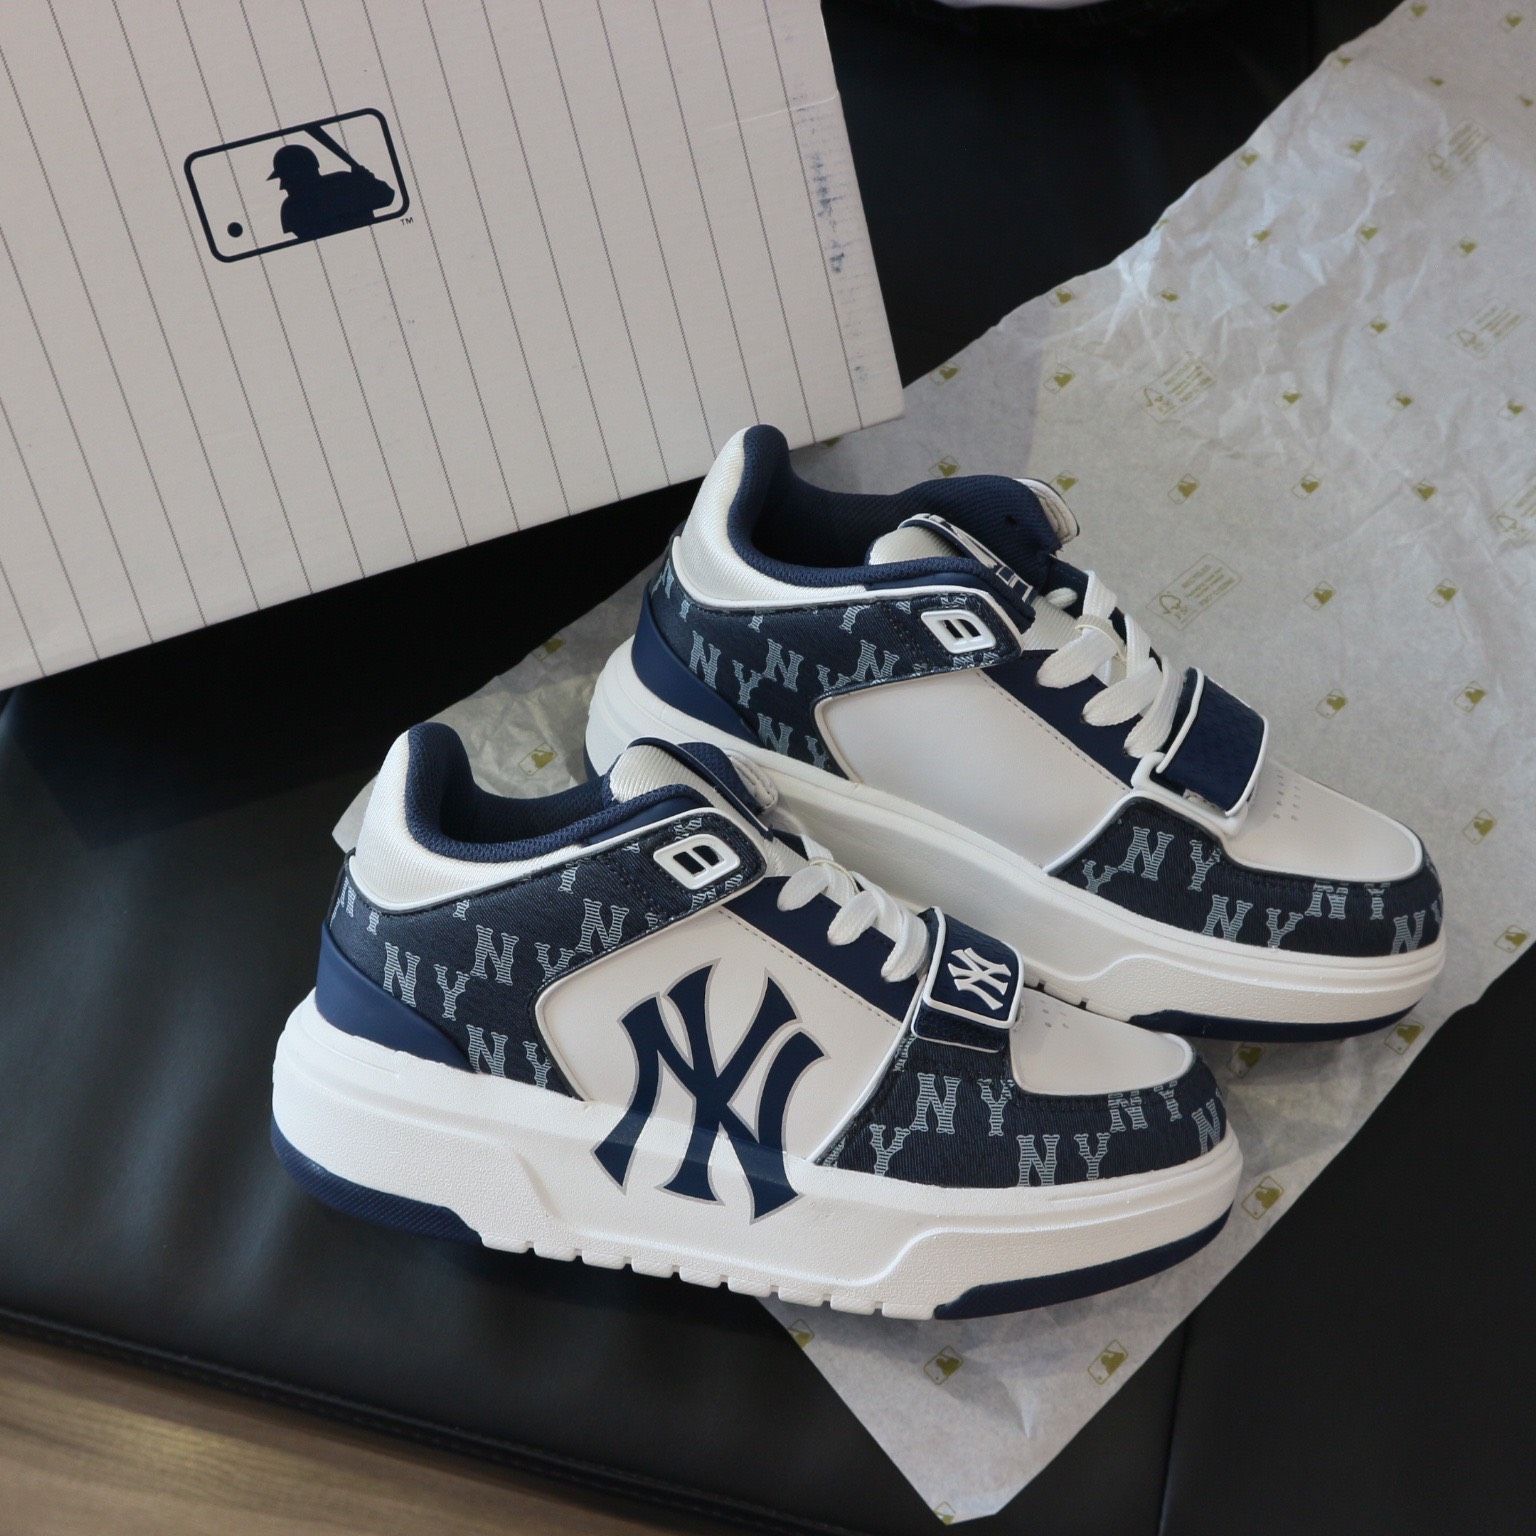 Giày Mlb CHUNKY LINER New York Yankees Xanh lá cây  Hàng Authentic   GiaySneakerStore